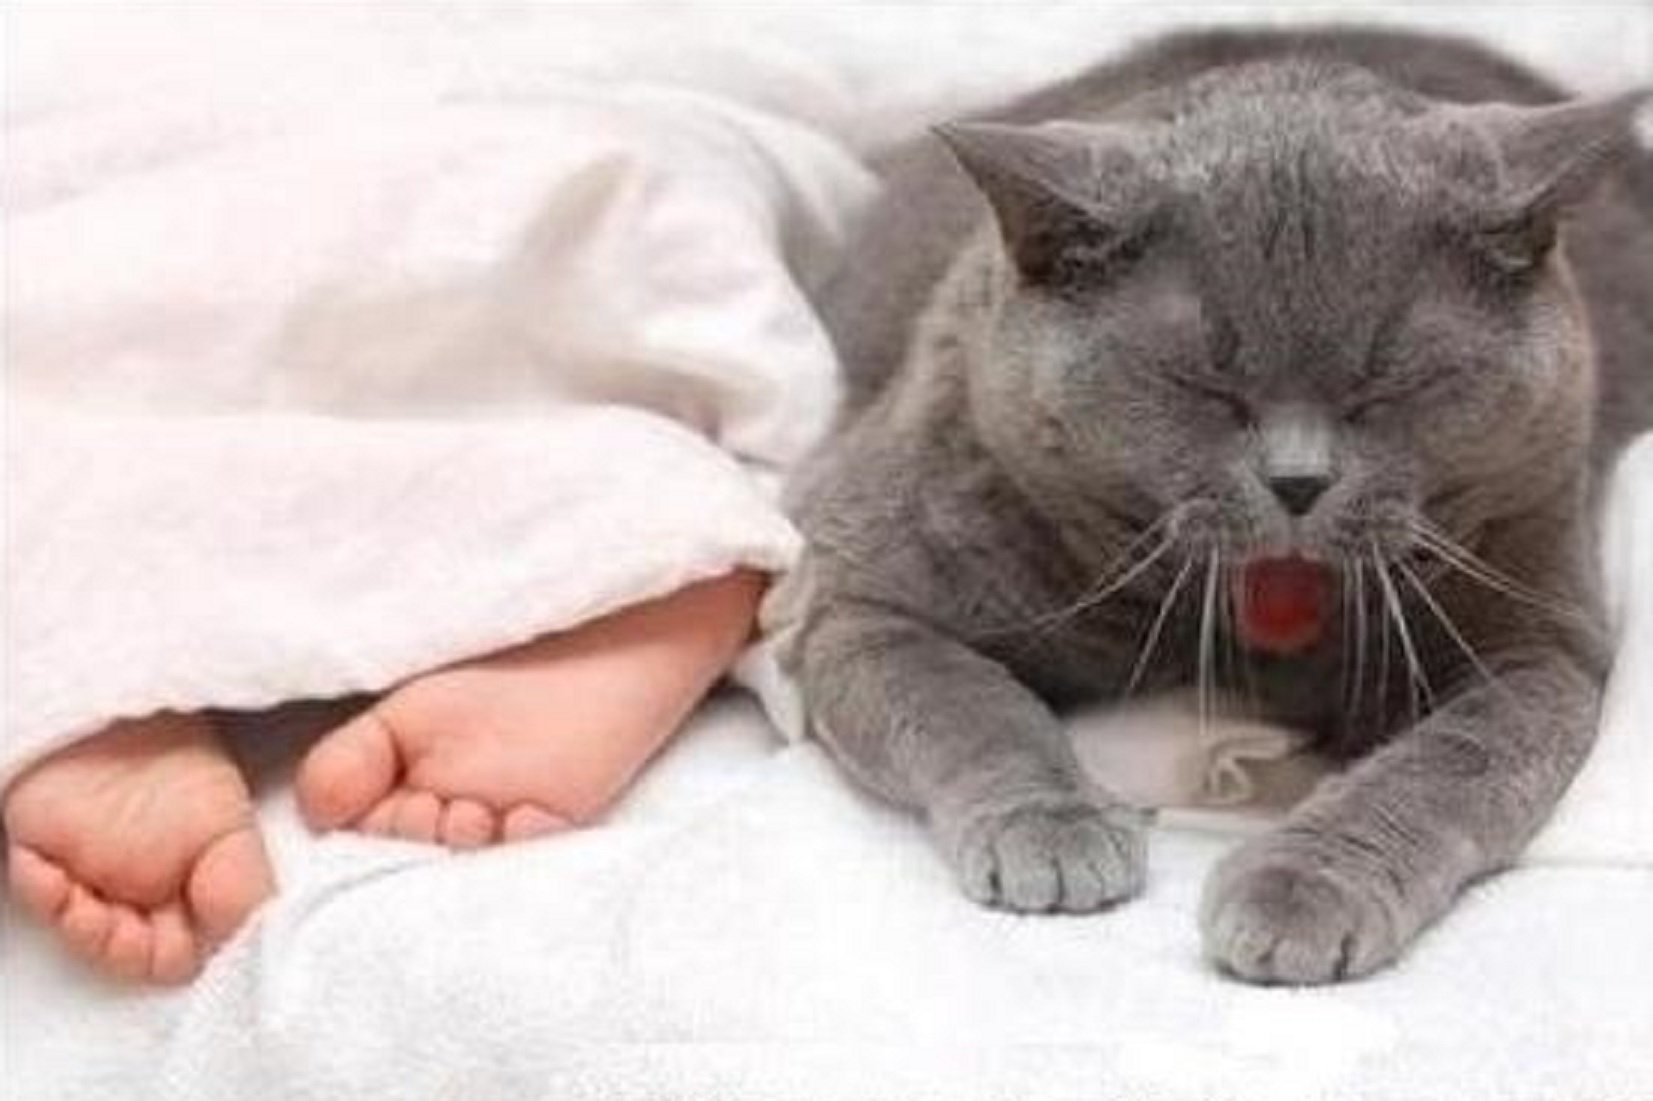 Спокойно ы. Спокойный котик. Спокойной ночи с кошками. Доброй ночи котик. Спокойной ночи картинки с котиками.